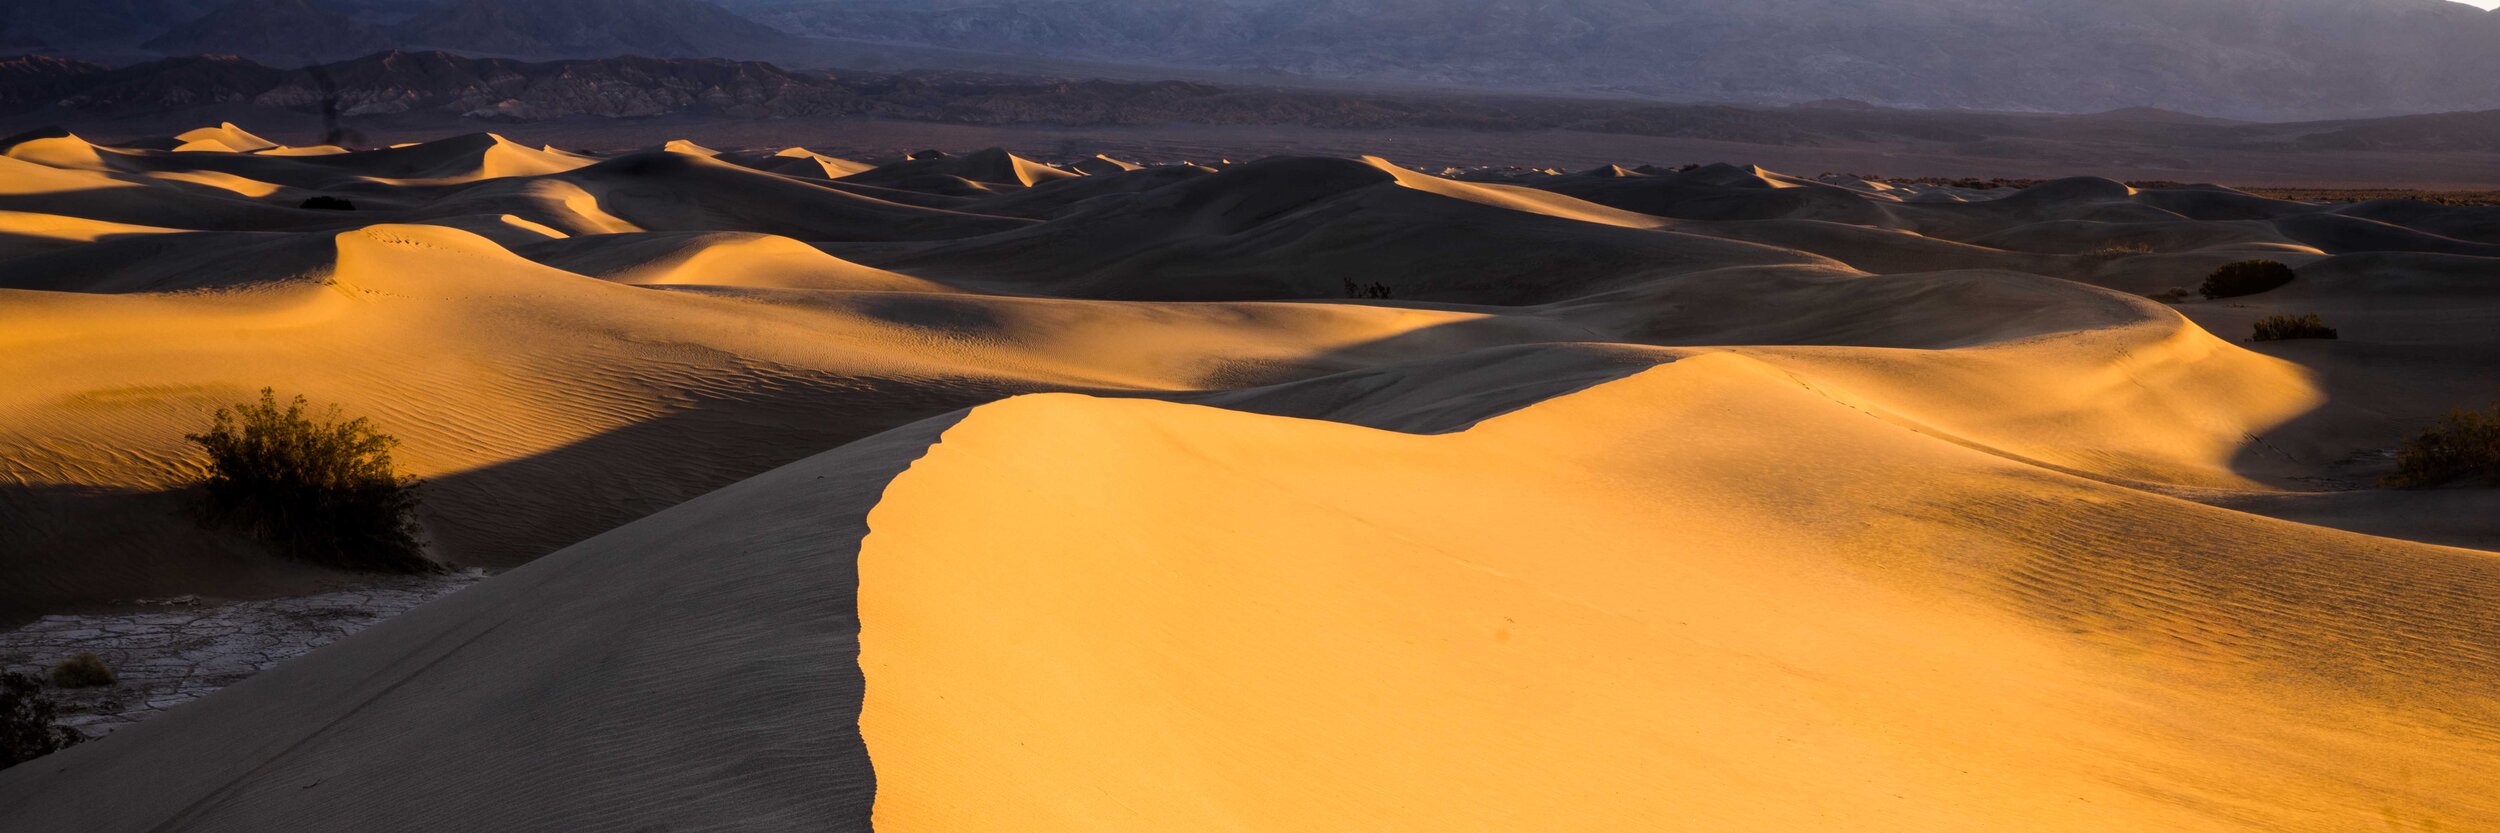 Death Valley 2019-6.jpg